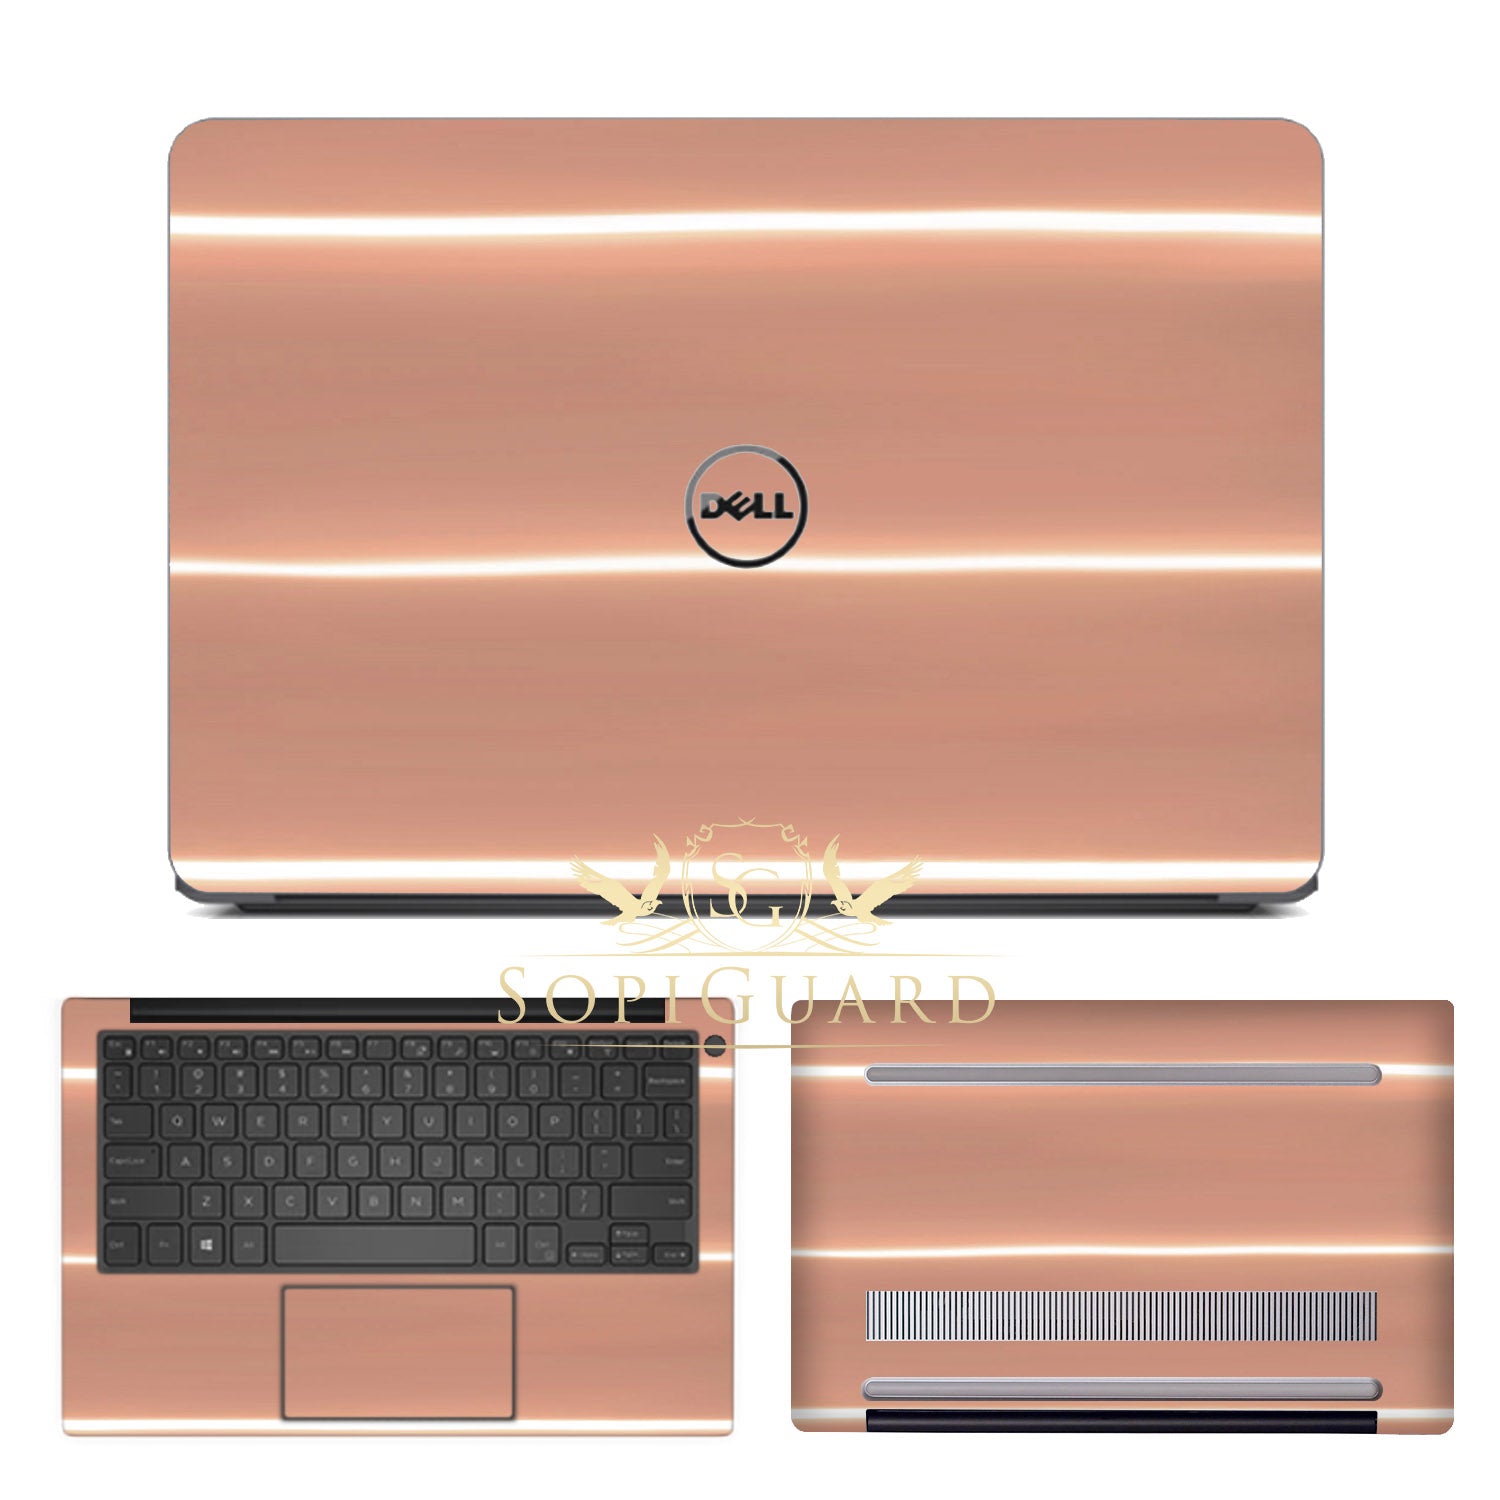 Dell XPS 13 (9380) sticker skin